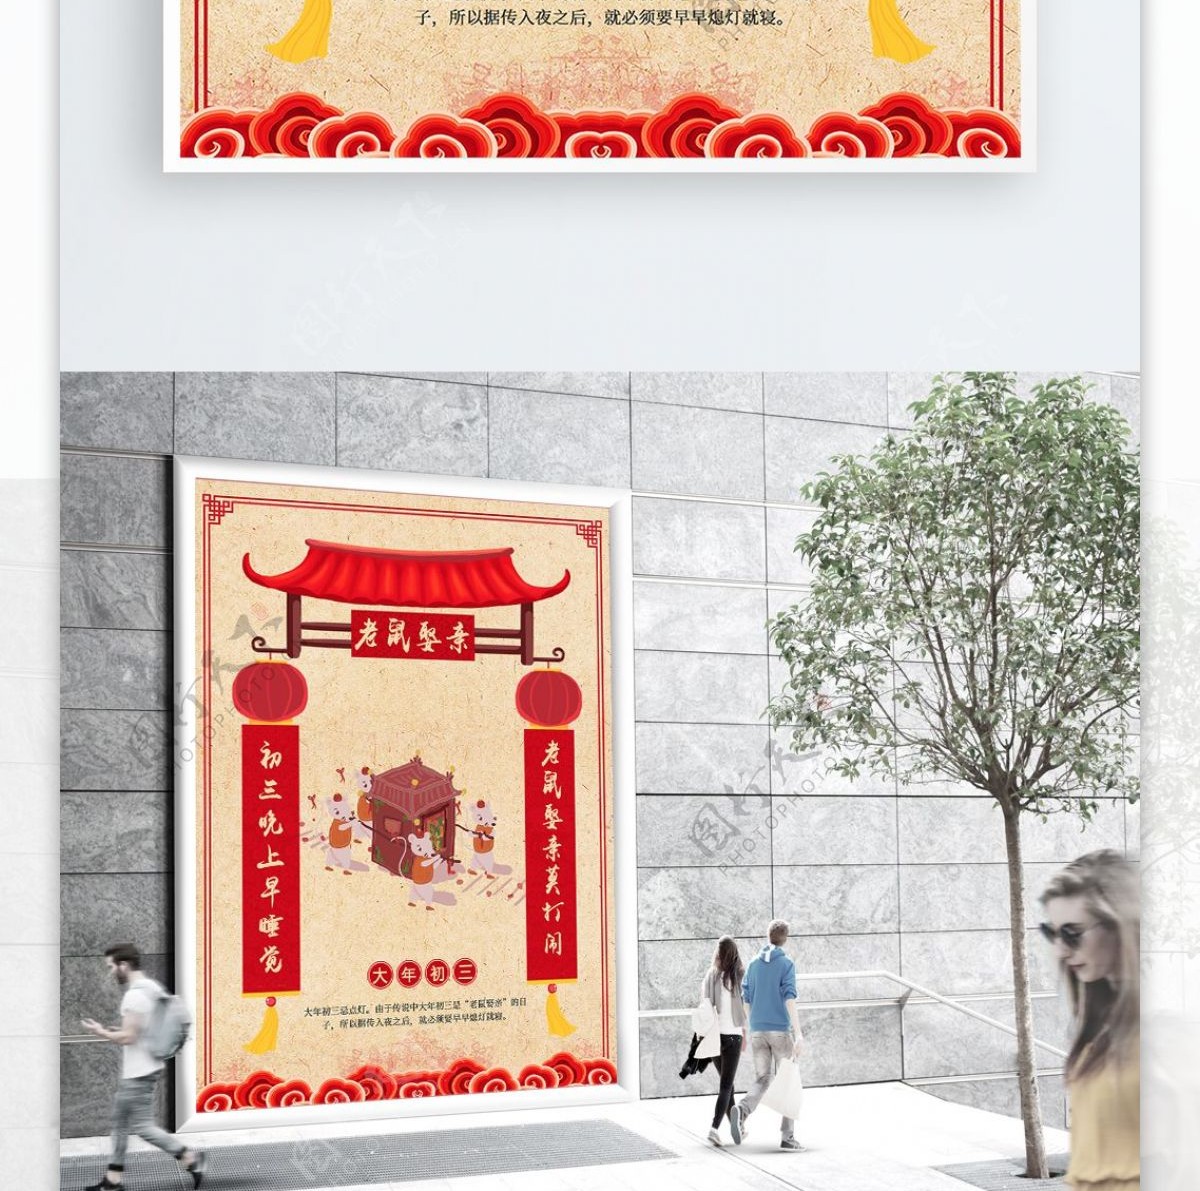 春节新年习俗初三老鼠娶亲海报